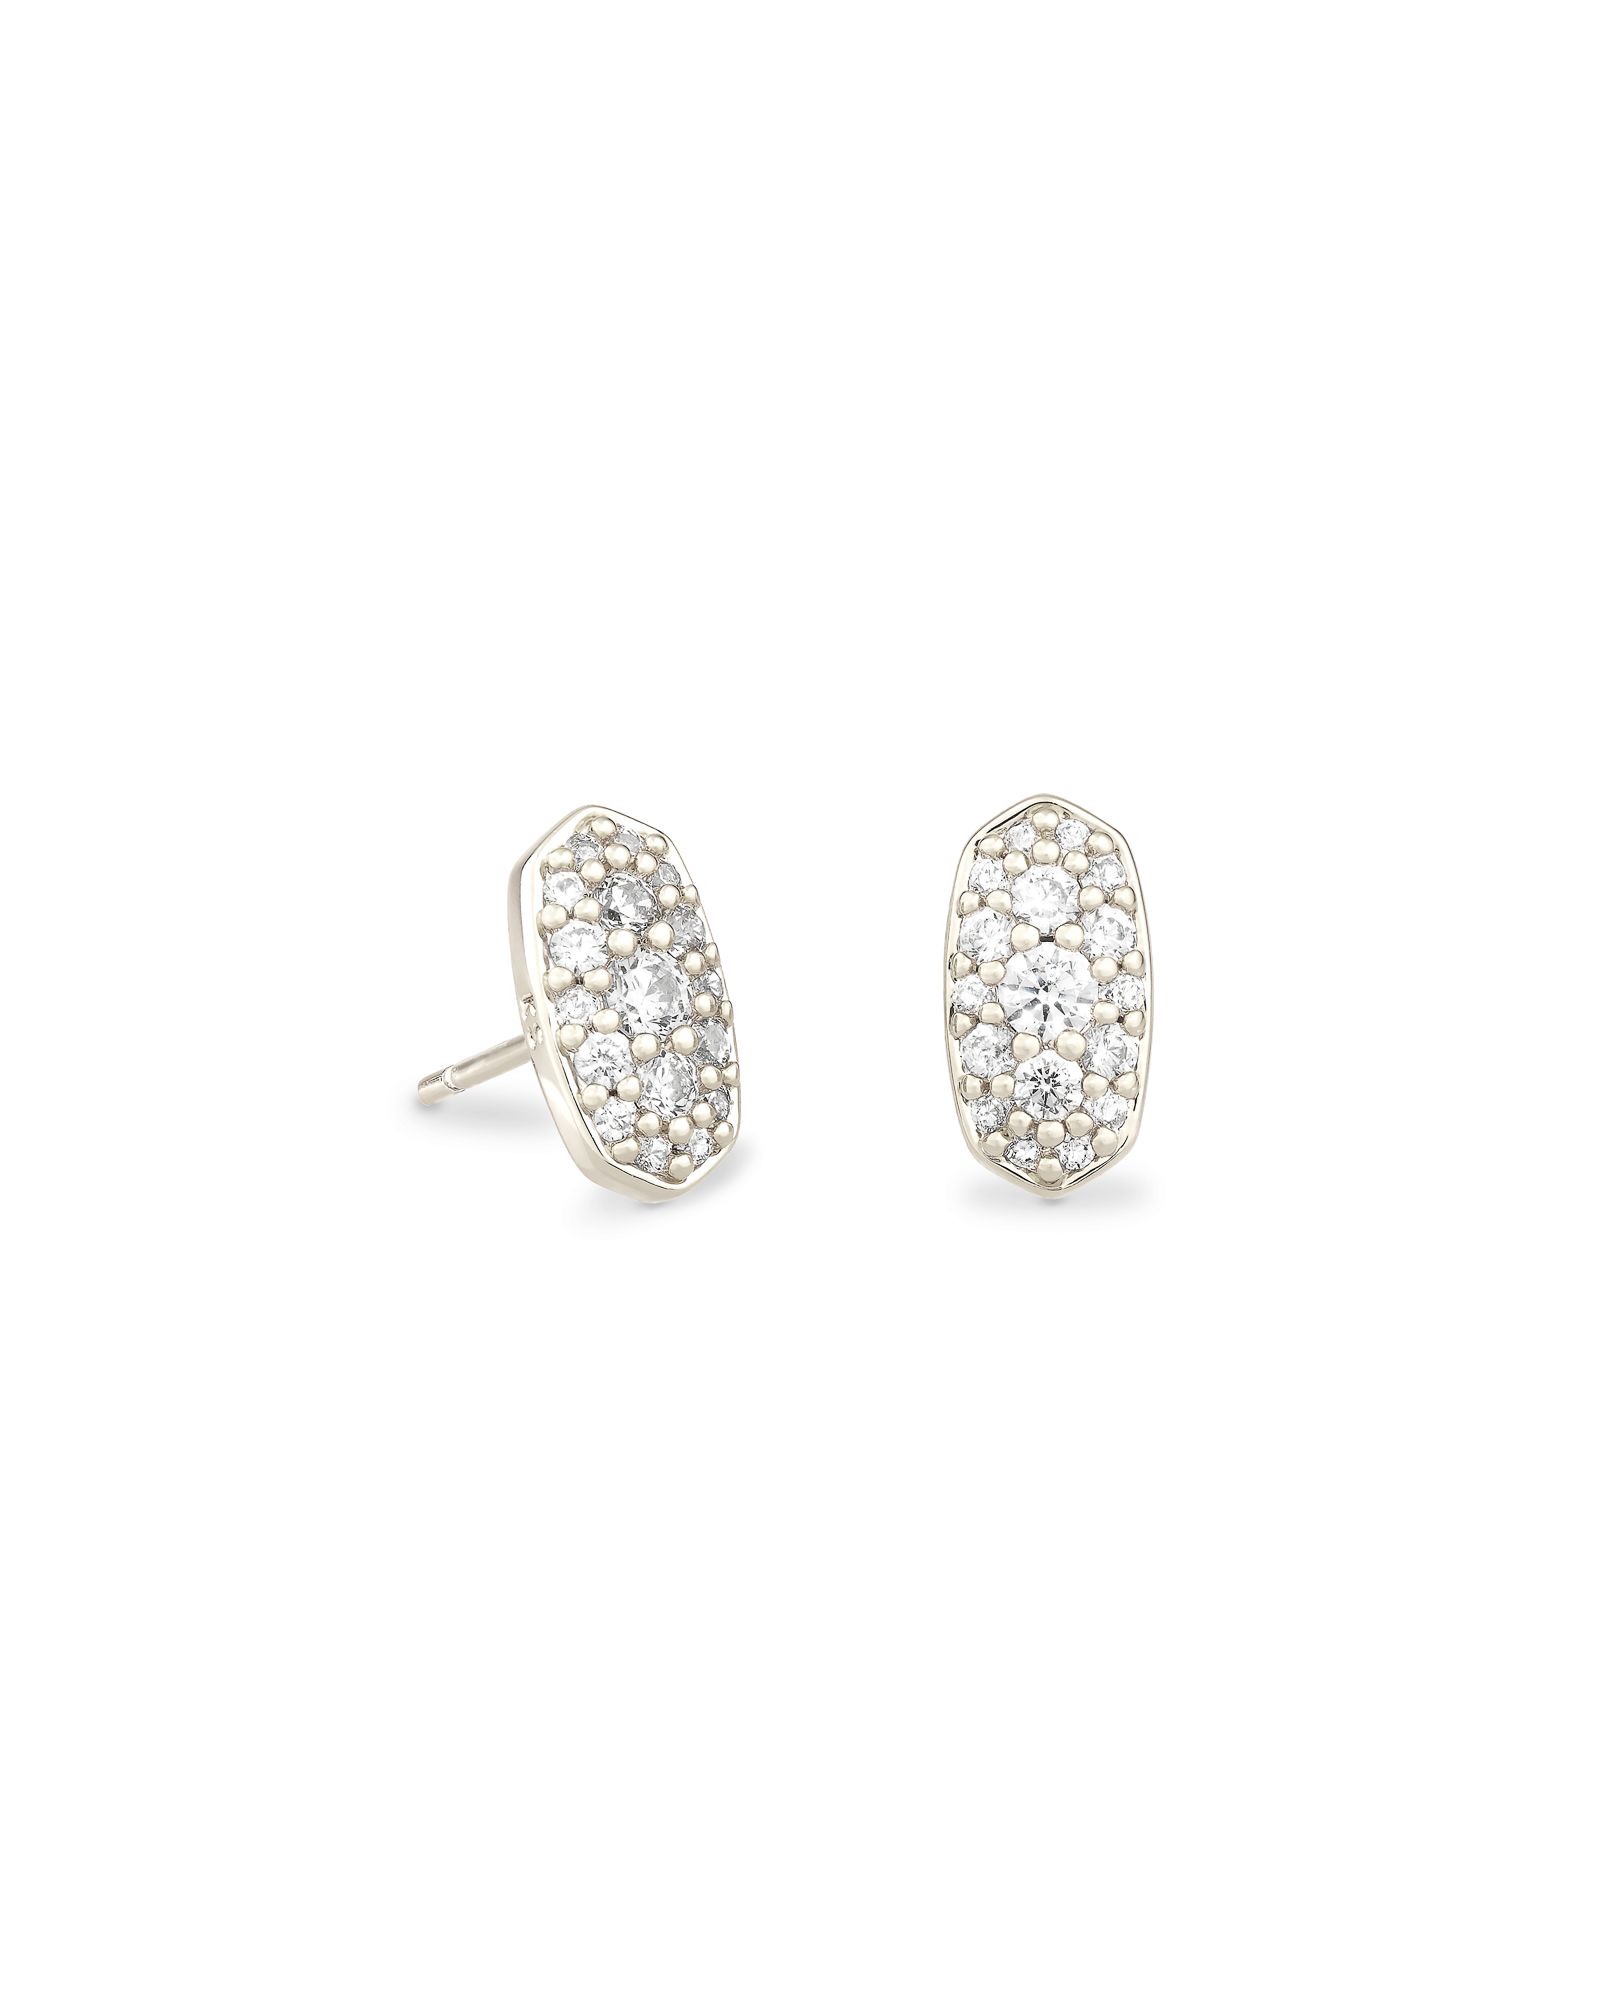 Grayson Silver Stud Earrings in White Crystal | Kendra Scott | Kendra Scott